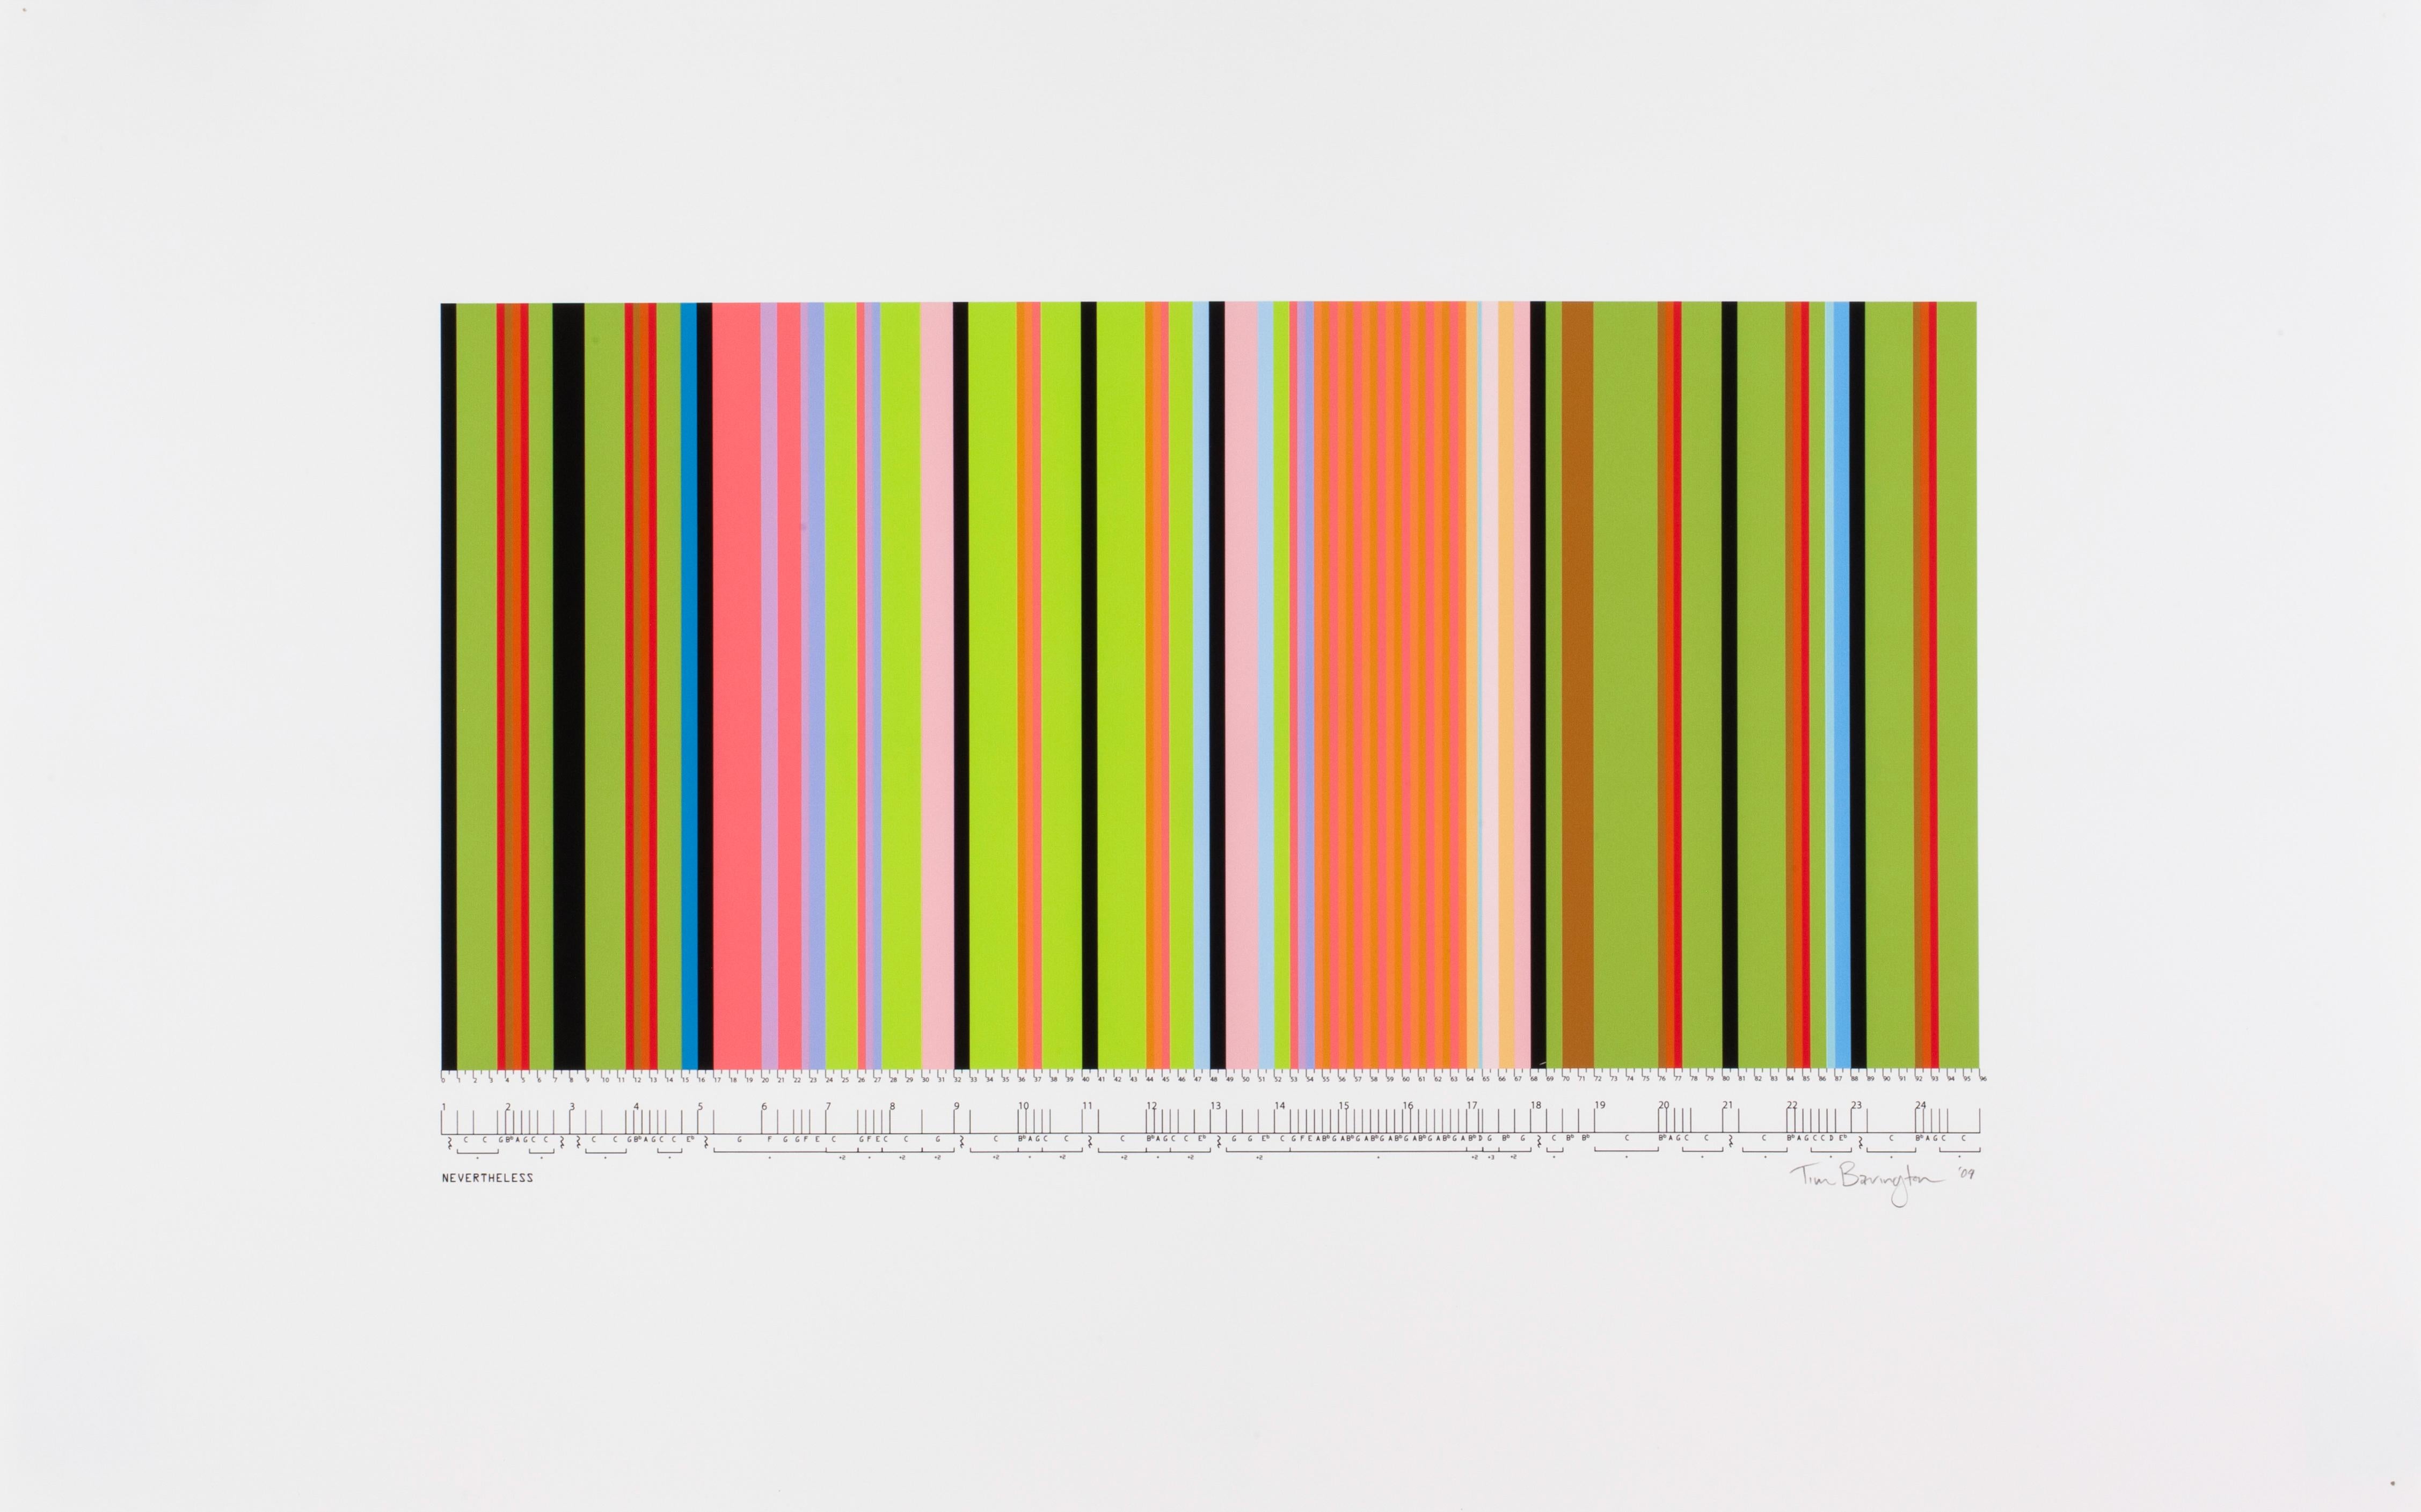 Tim Bavington Abstract Print - Study For "Nevertheless"